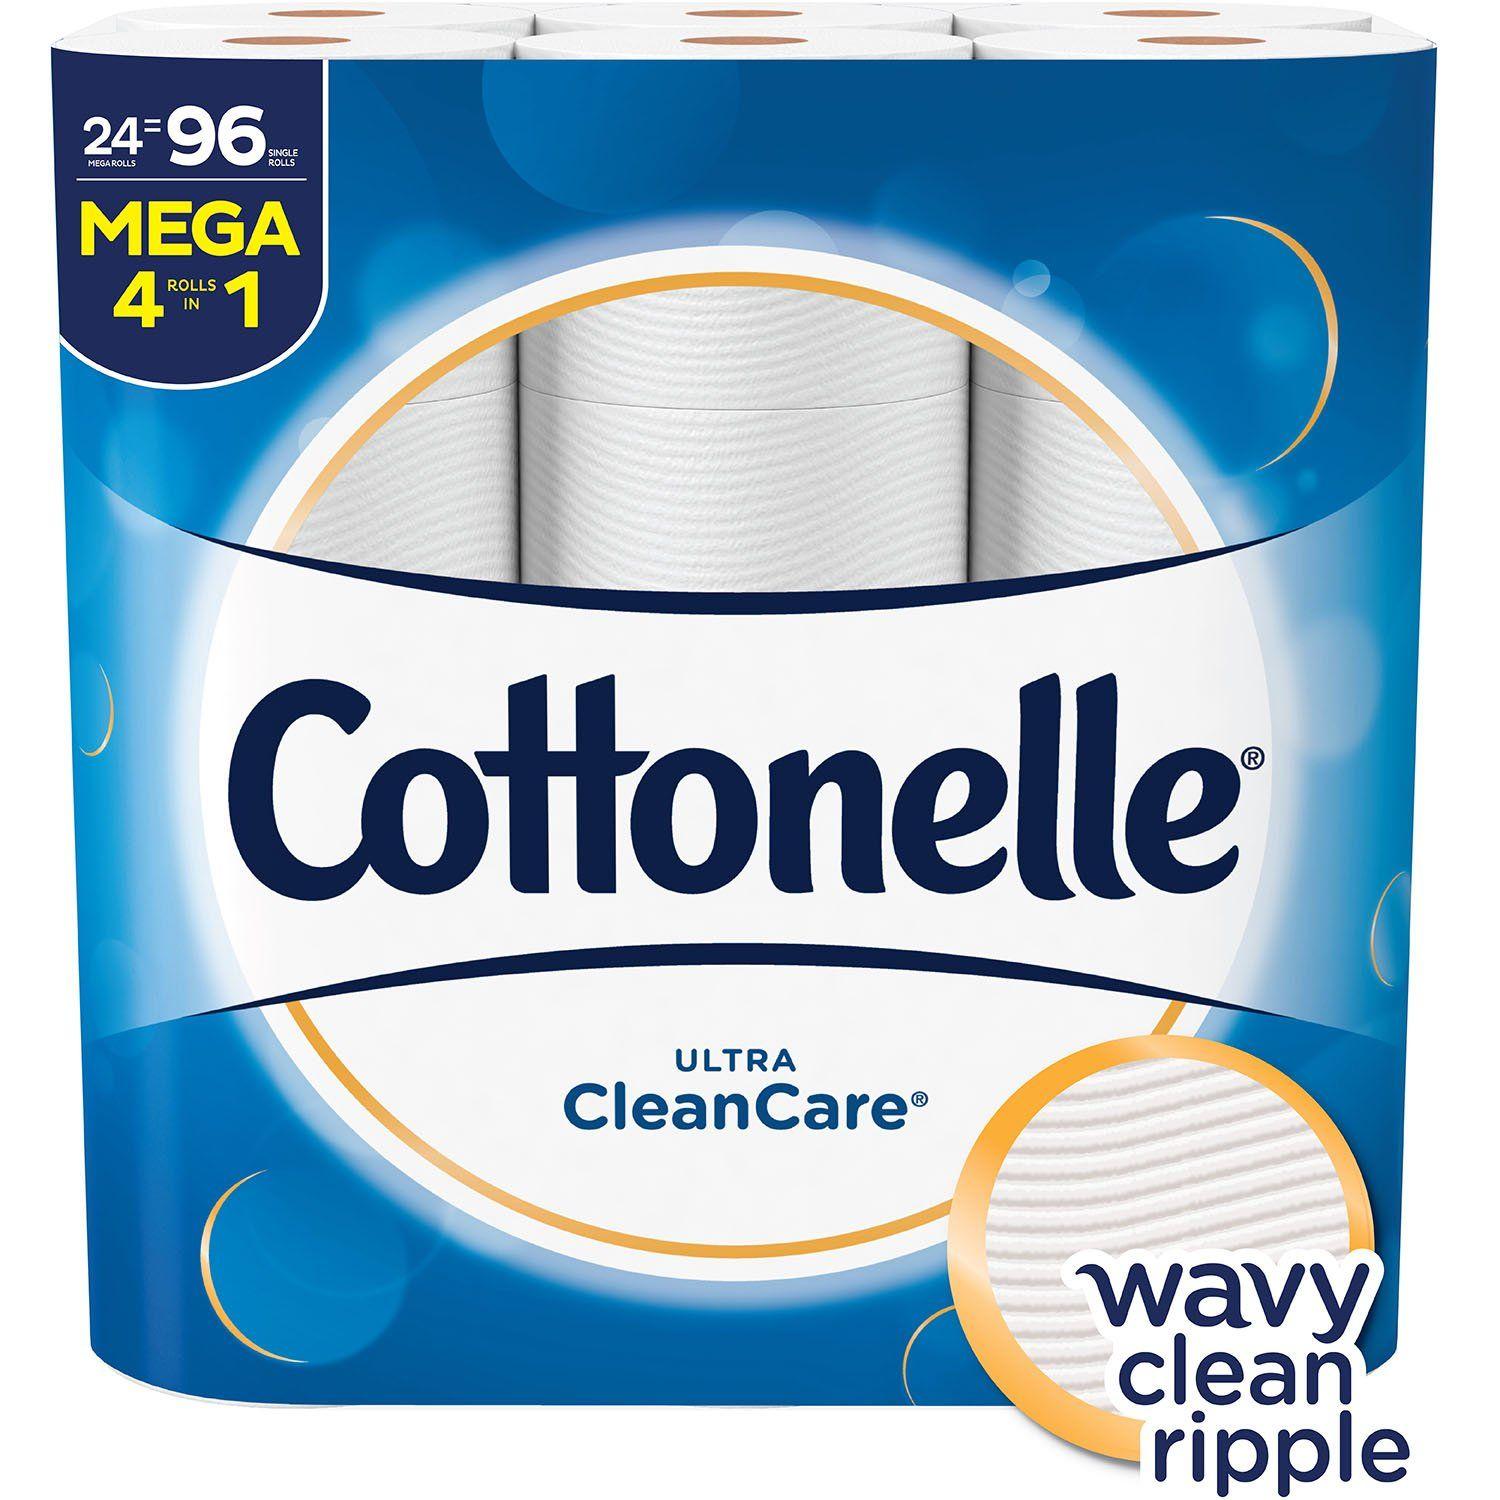 Cottonelle Logo - Cottonelle Ultra CleanCare Toilet Paper, Strong Bath Tissue, Septic Safe, 24 Mega Rolls